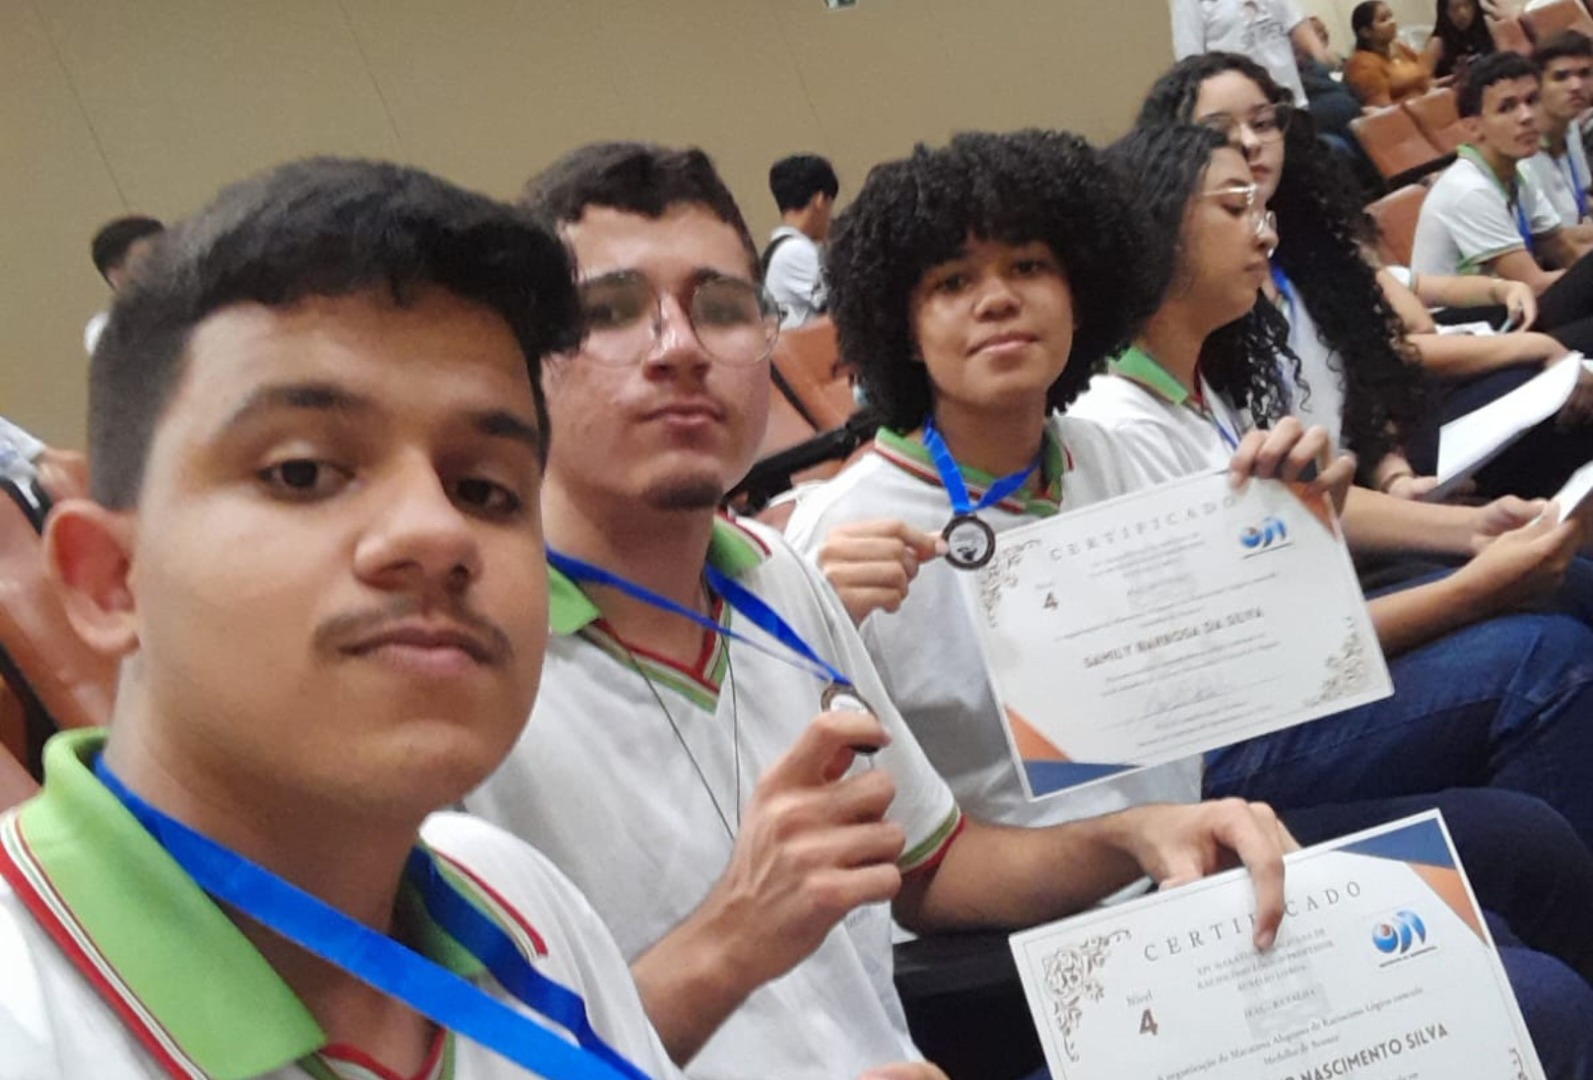 Entrega de medalhas em cerimônia na Universidade Federal de Alagoas